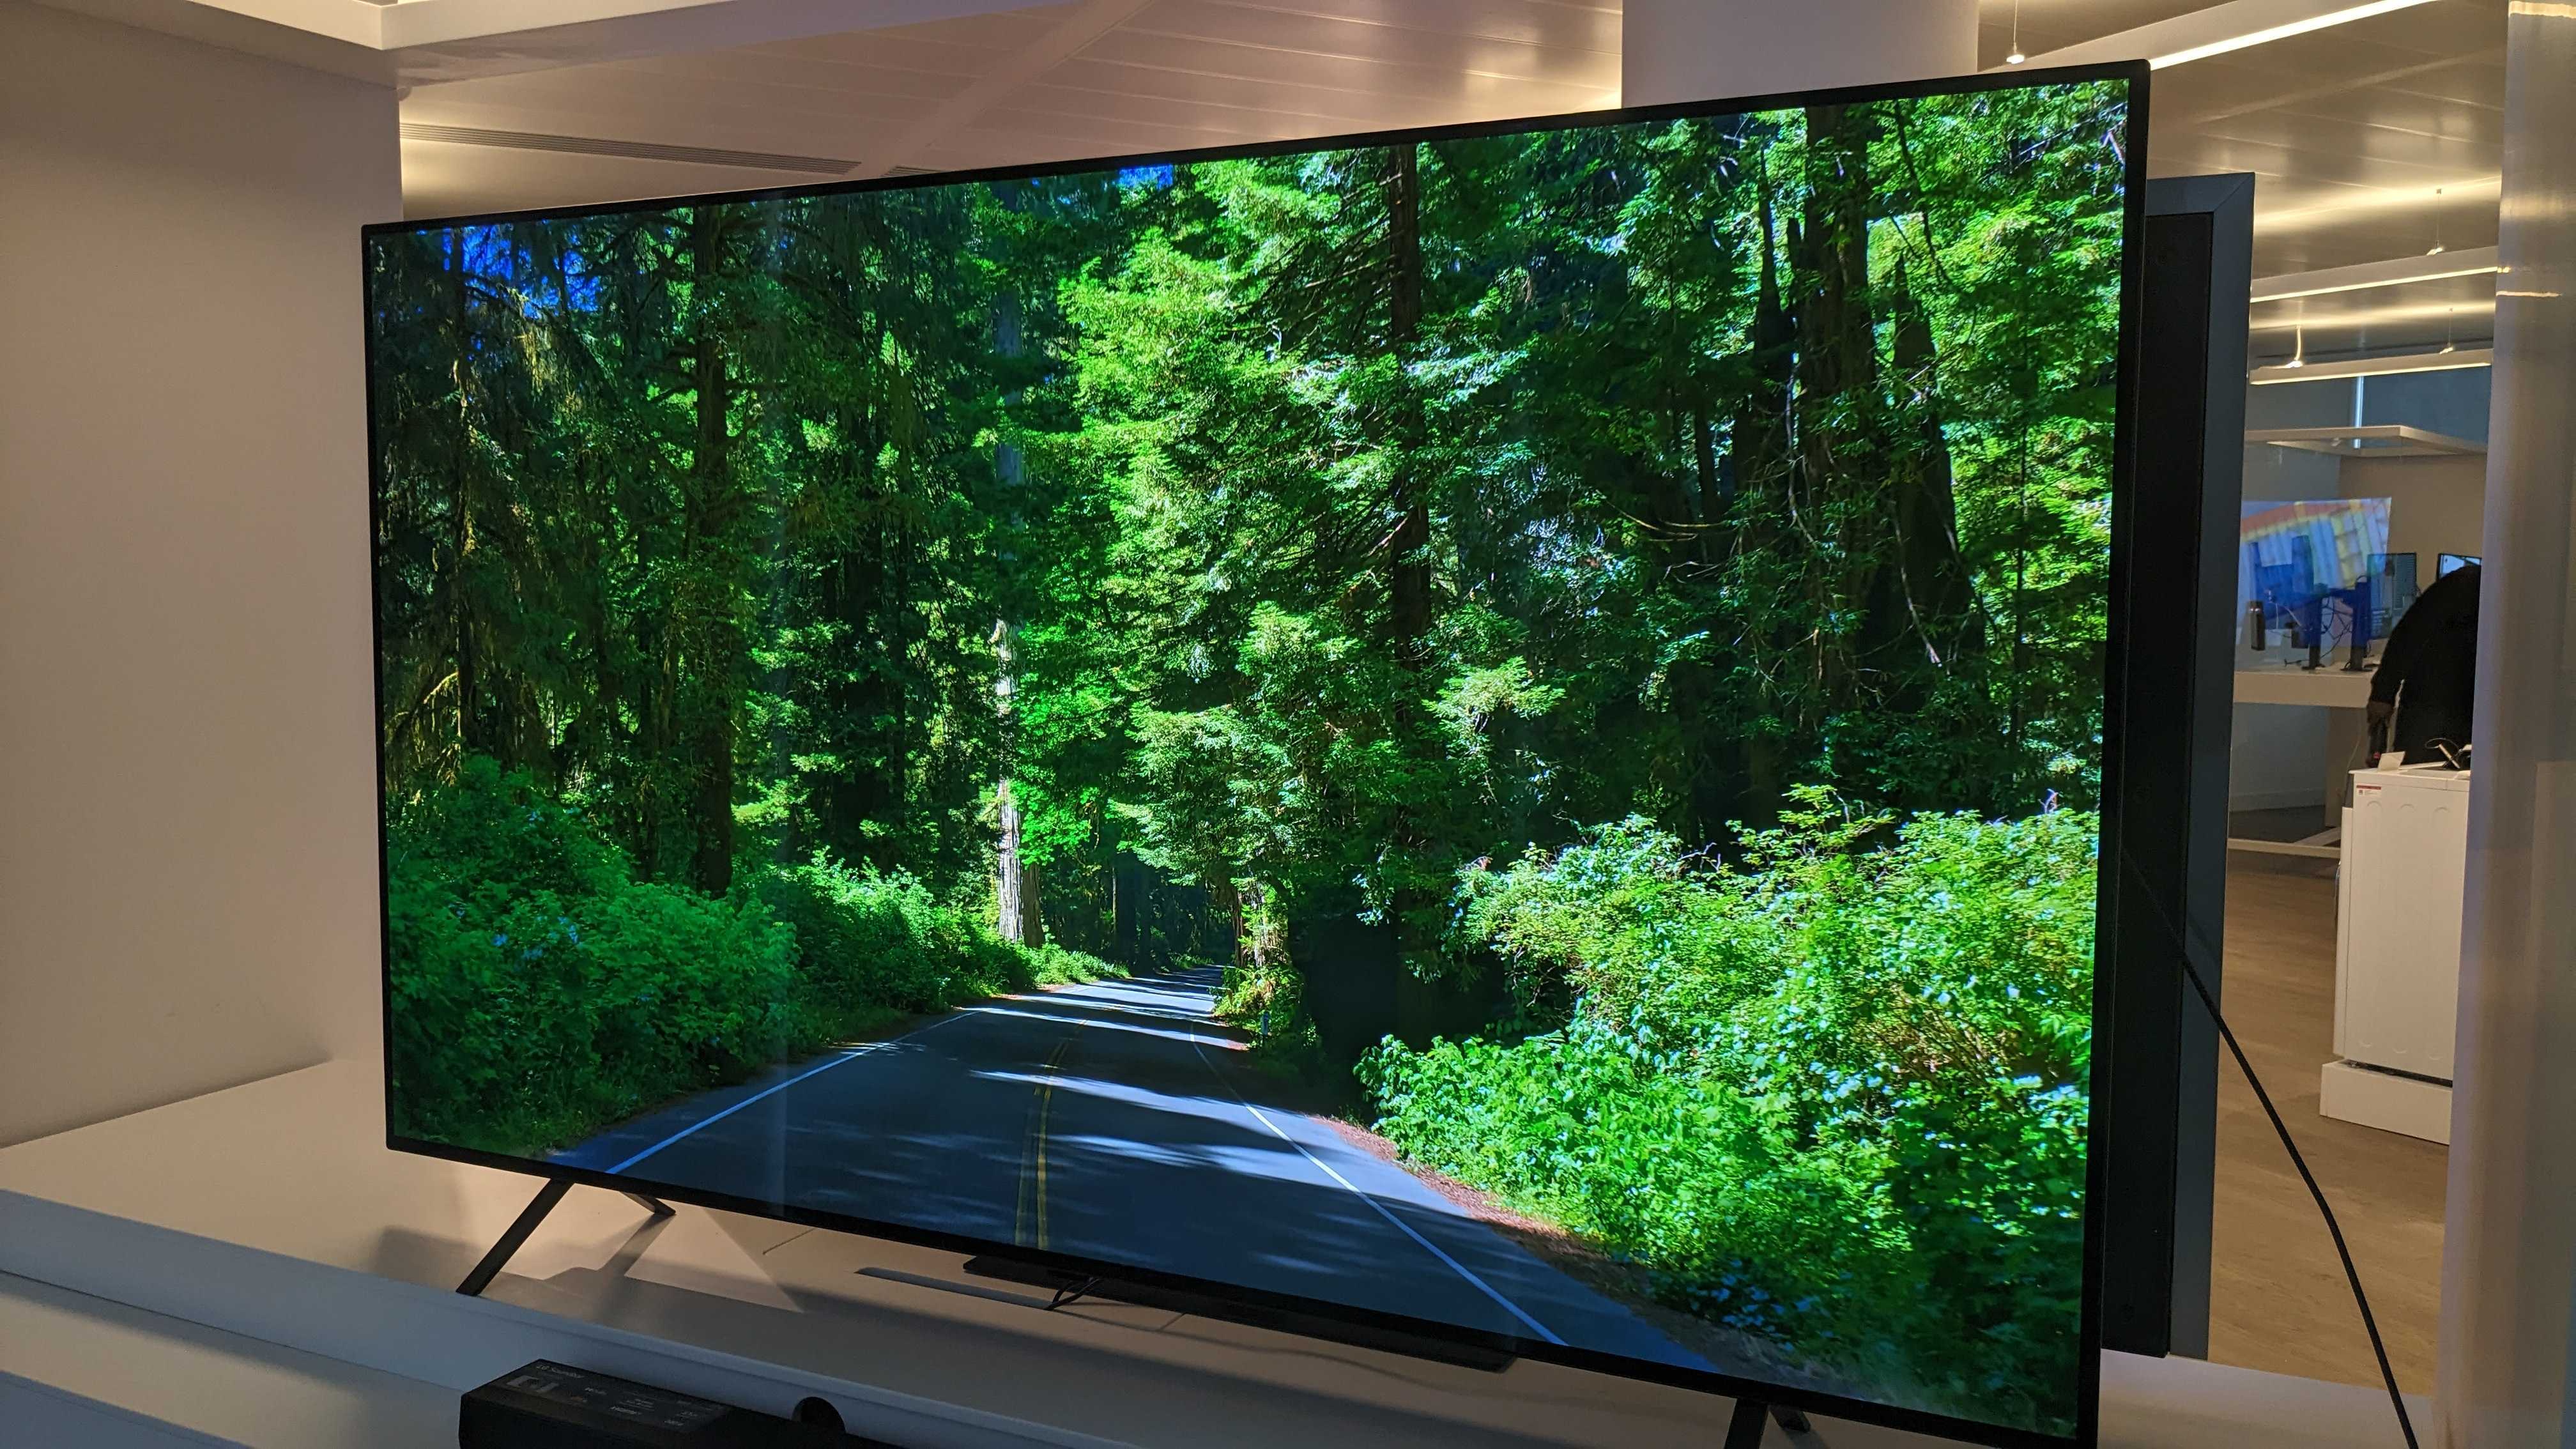 LG B4 OLED TV met een groen bos in beeld